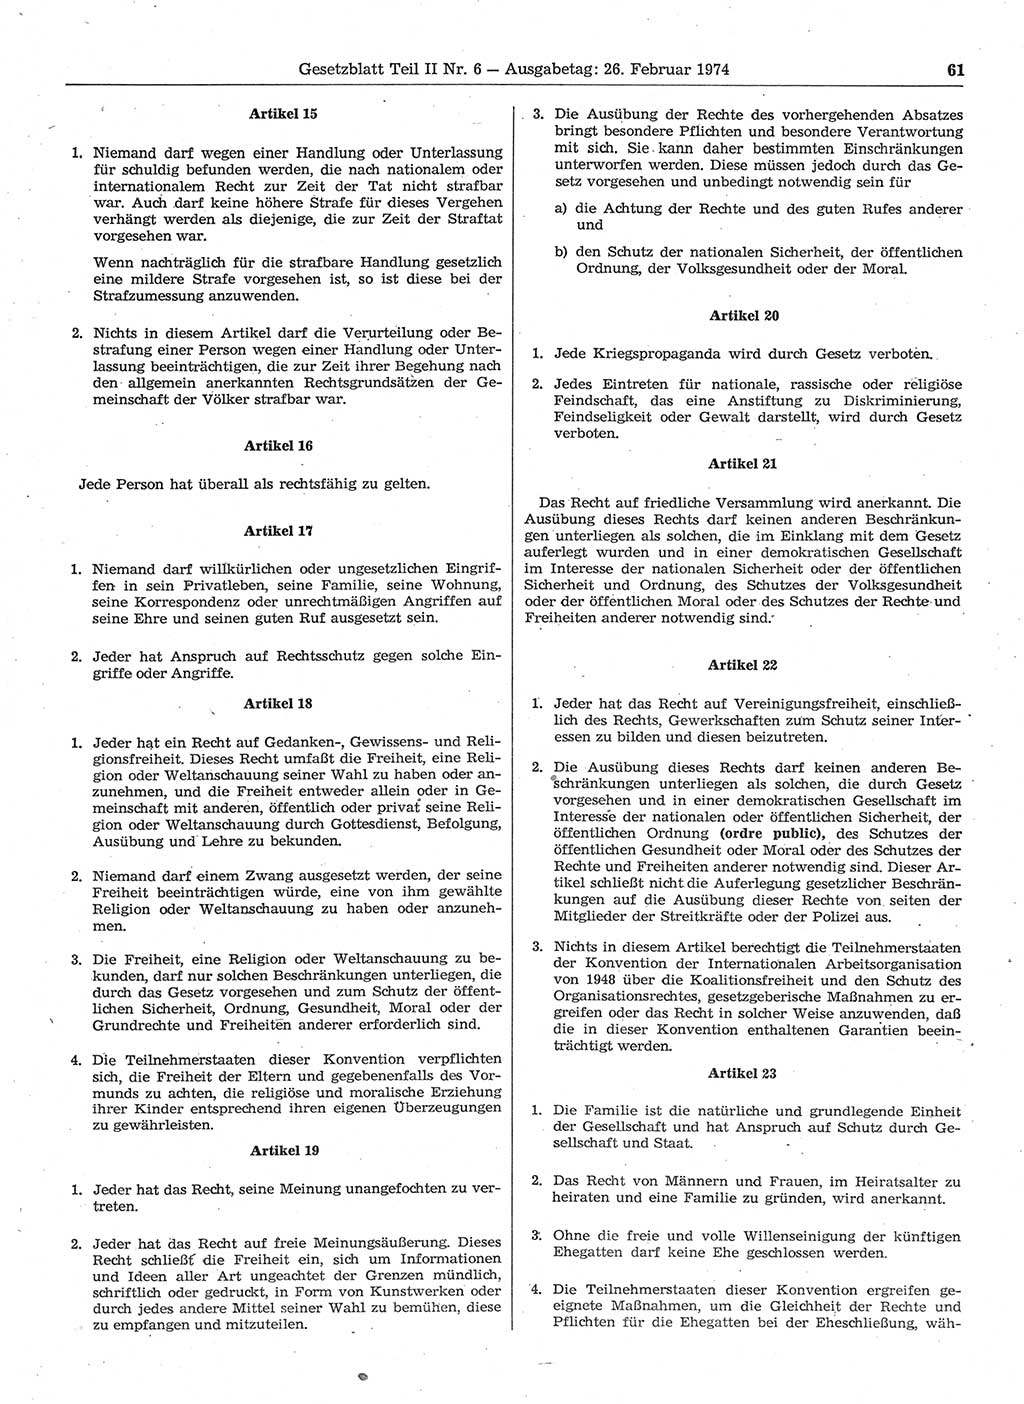 Gesetzblatt (GBl.) der Deutschen Demokratischen Republik (DDR) Teil ⅠⅠ 1974, Seite 61 (GBl. DDR ⅠⅠ 1974, S. 61)